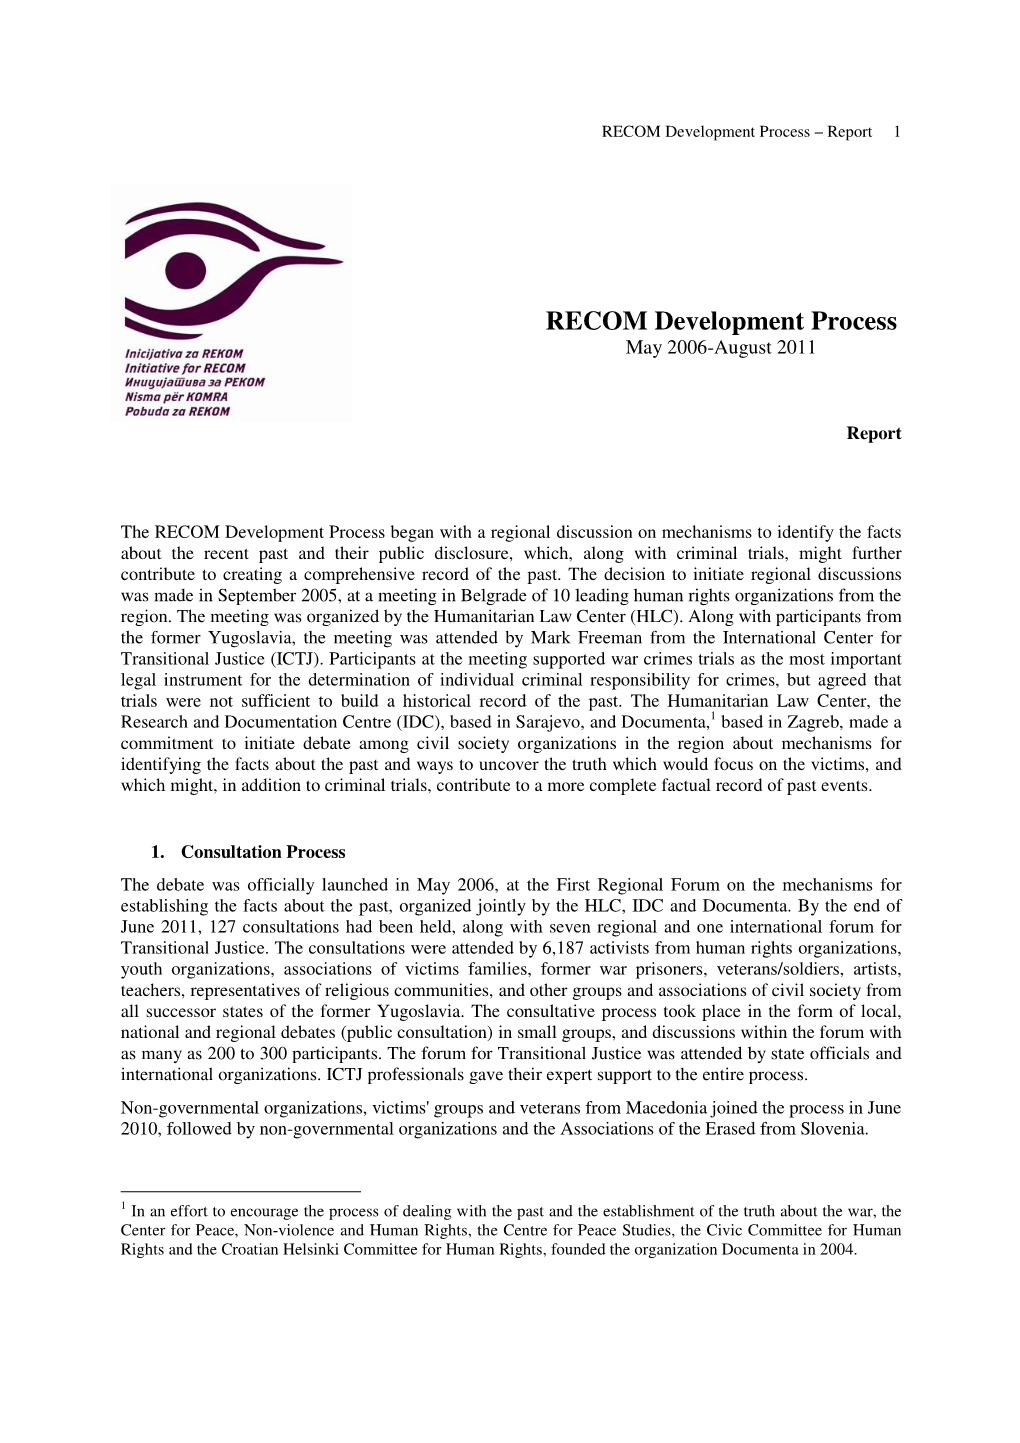 RECOM Process Report-2006-2011